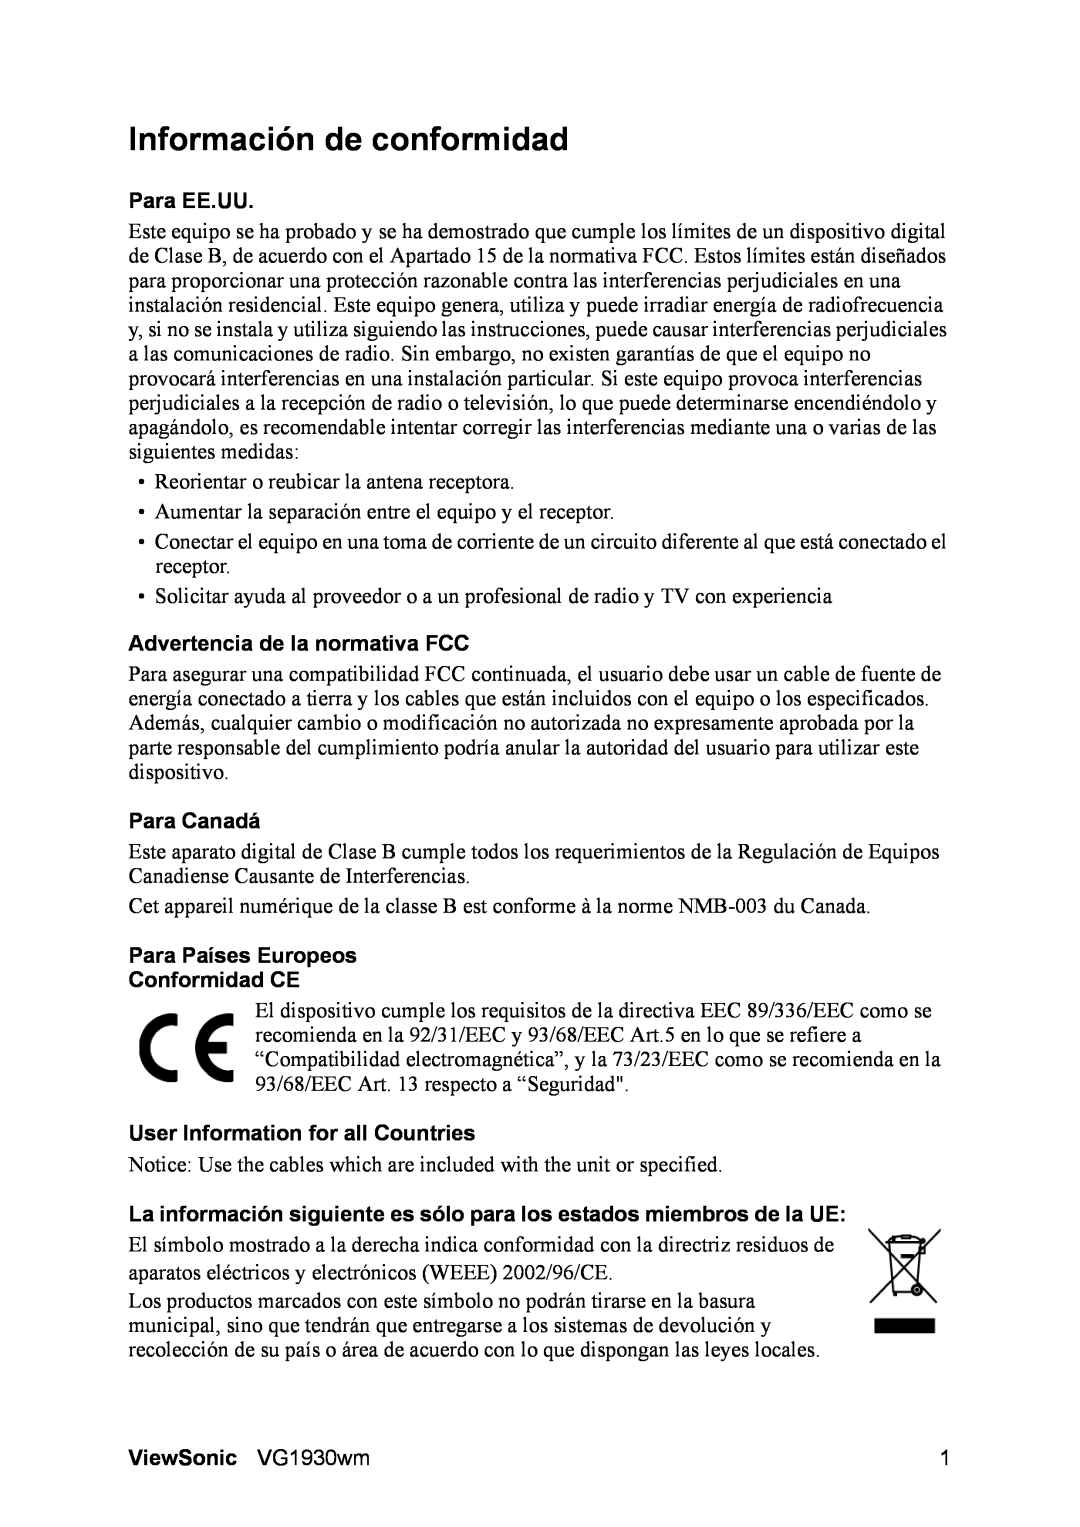 ViewSonic VG1930wm manual Información de conformidad, Para EE.UU, Advertencia de la normativa FCC, Para Canadá 